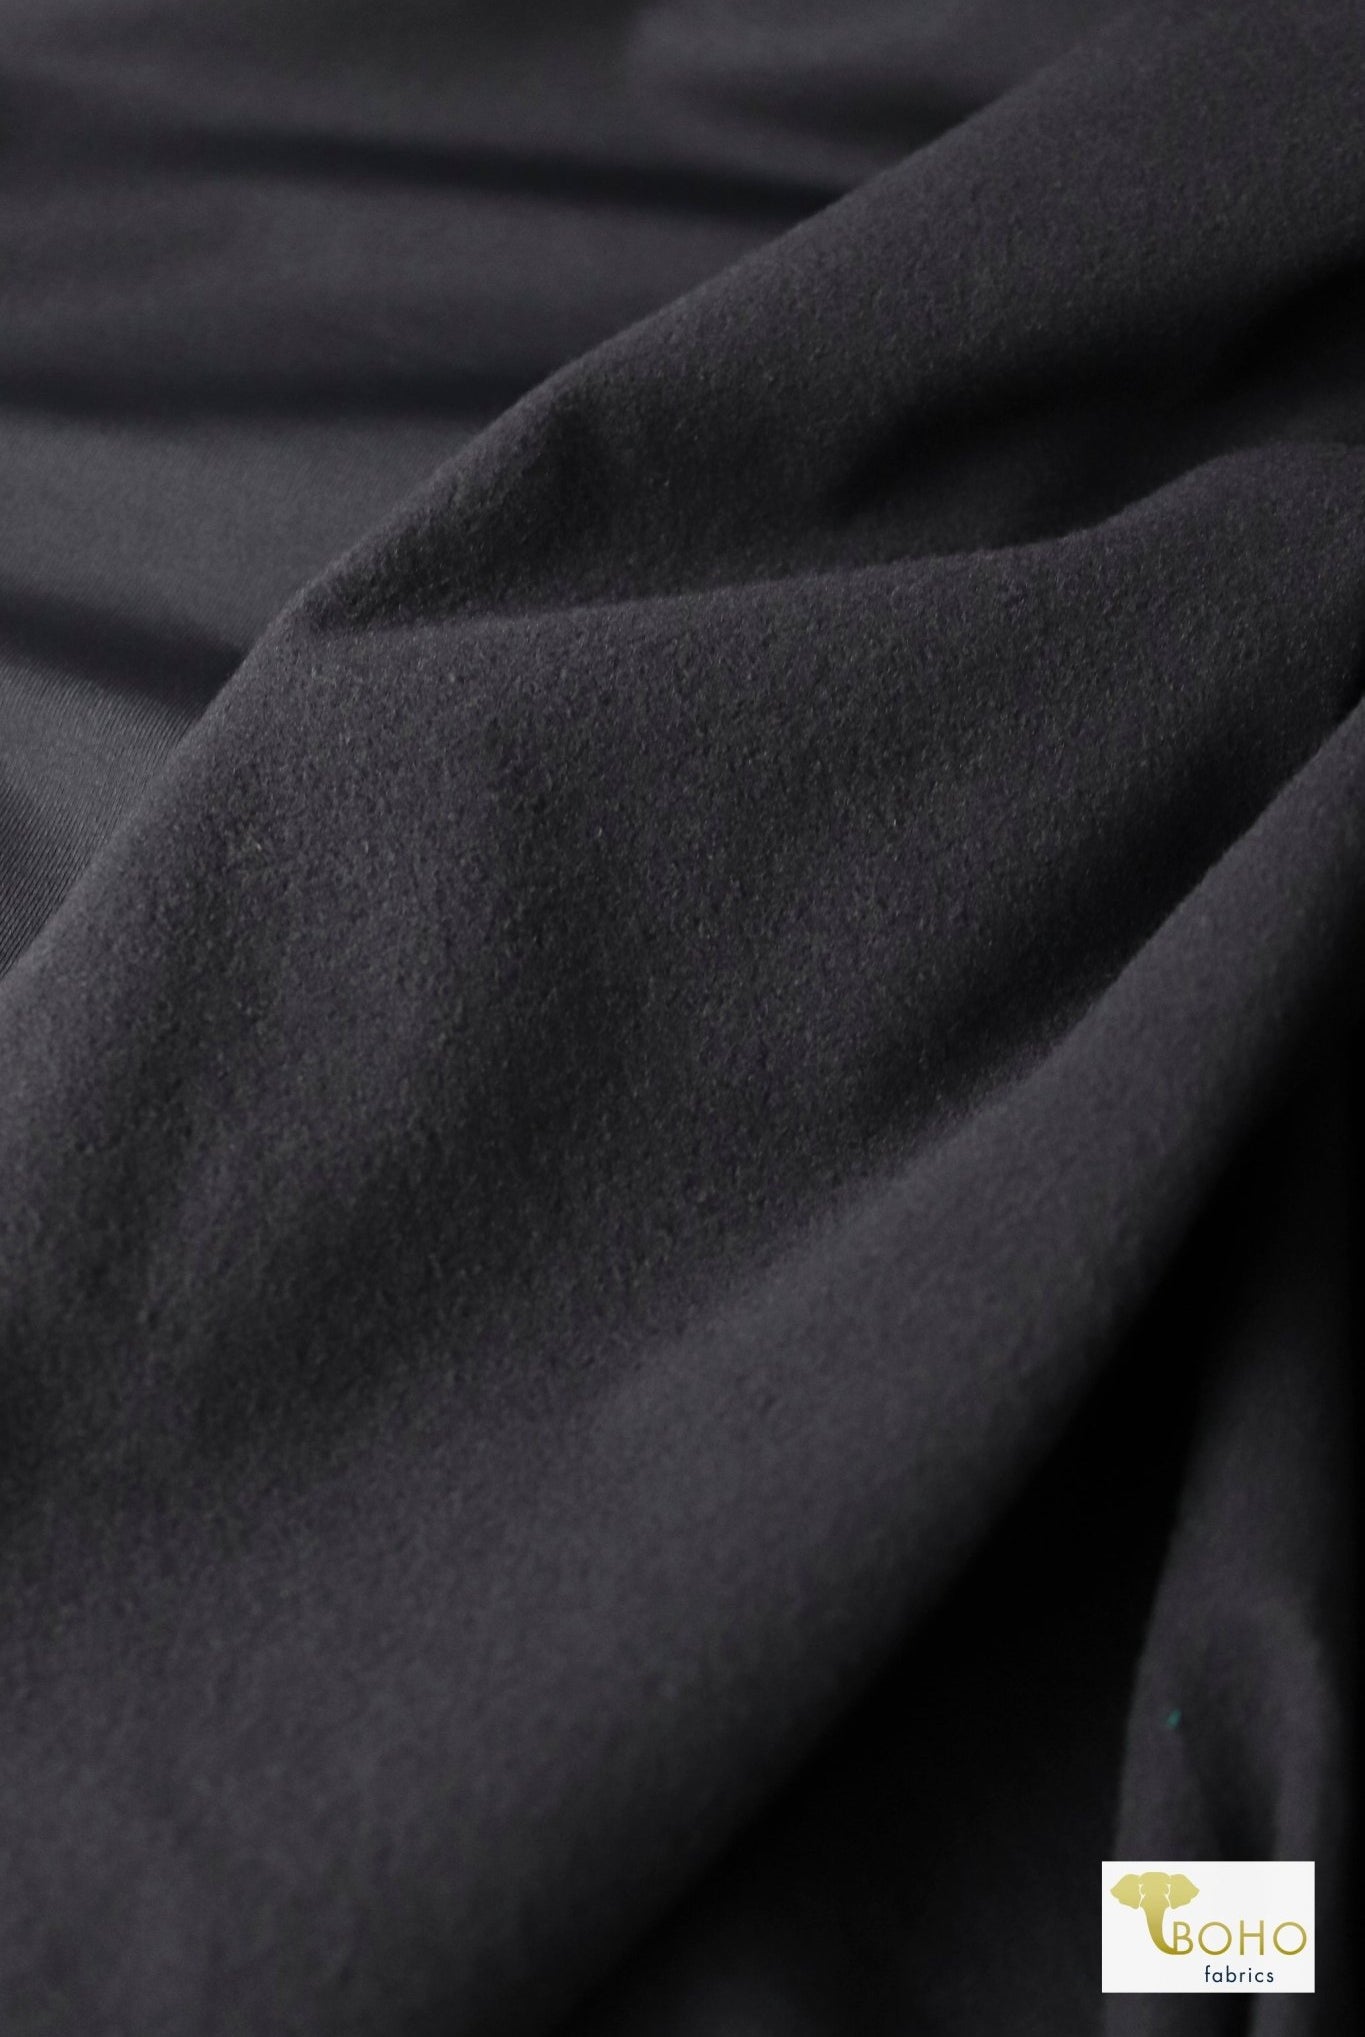 Dark Gray, Fleece Backed, Athletic Knit - Boho Fabrics